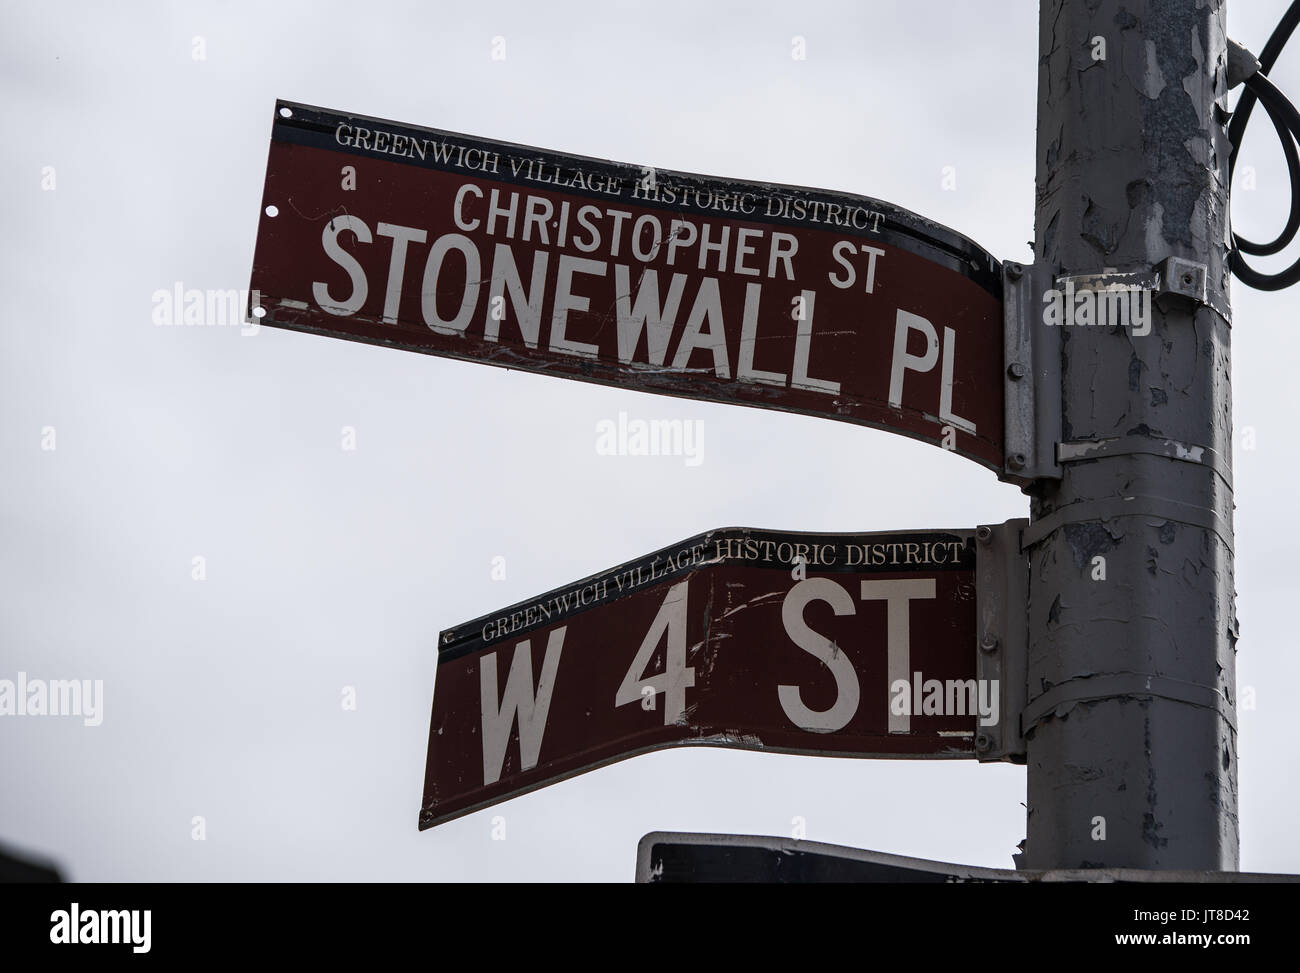 La Ciudad de Nueva York, Nueva York, Estados Unidos. 6 ago, 2017. La fachada de la histórica Stonewall Inn, donde las revueltas tuvo lugar en junio de 1969 debido a la presunta persecución a las redadas. Las protestas en Greenwich Village son consideradas las primeras protestas por los derechos gay pride y donde el movimiento comenzó. Más recientemente, en febrero de 2017, una protesta contra la prohibición de musulmanes y contra los ataques contra la comunidad LGBTQ resultó en arrestos de activistas conocido como la ''Stonewall 4''. Su juicio tuvo lugar el 07 de agosto de 2017. Crédito: Sachelle Babbar/Zuma alambre/Alamy Live News Foto de stock